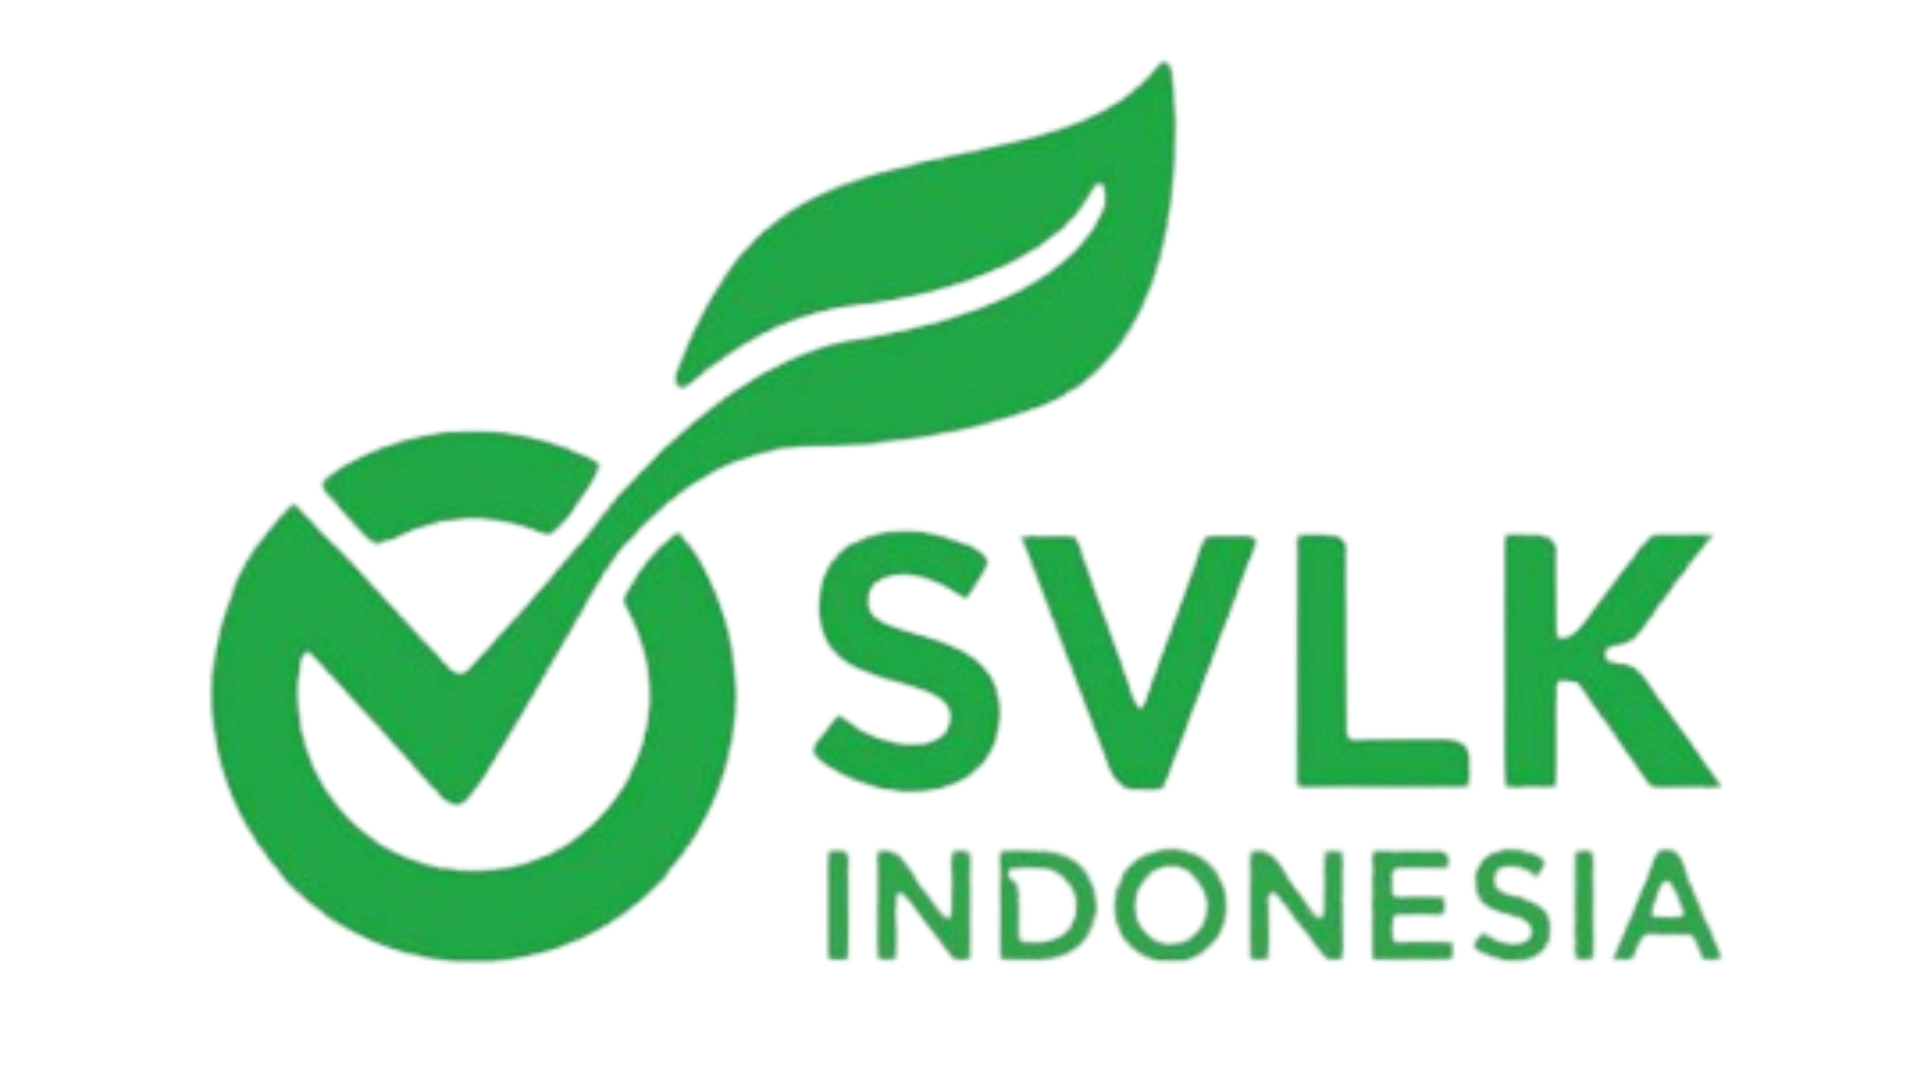 SVLK Indonesia